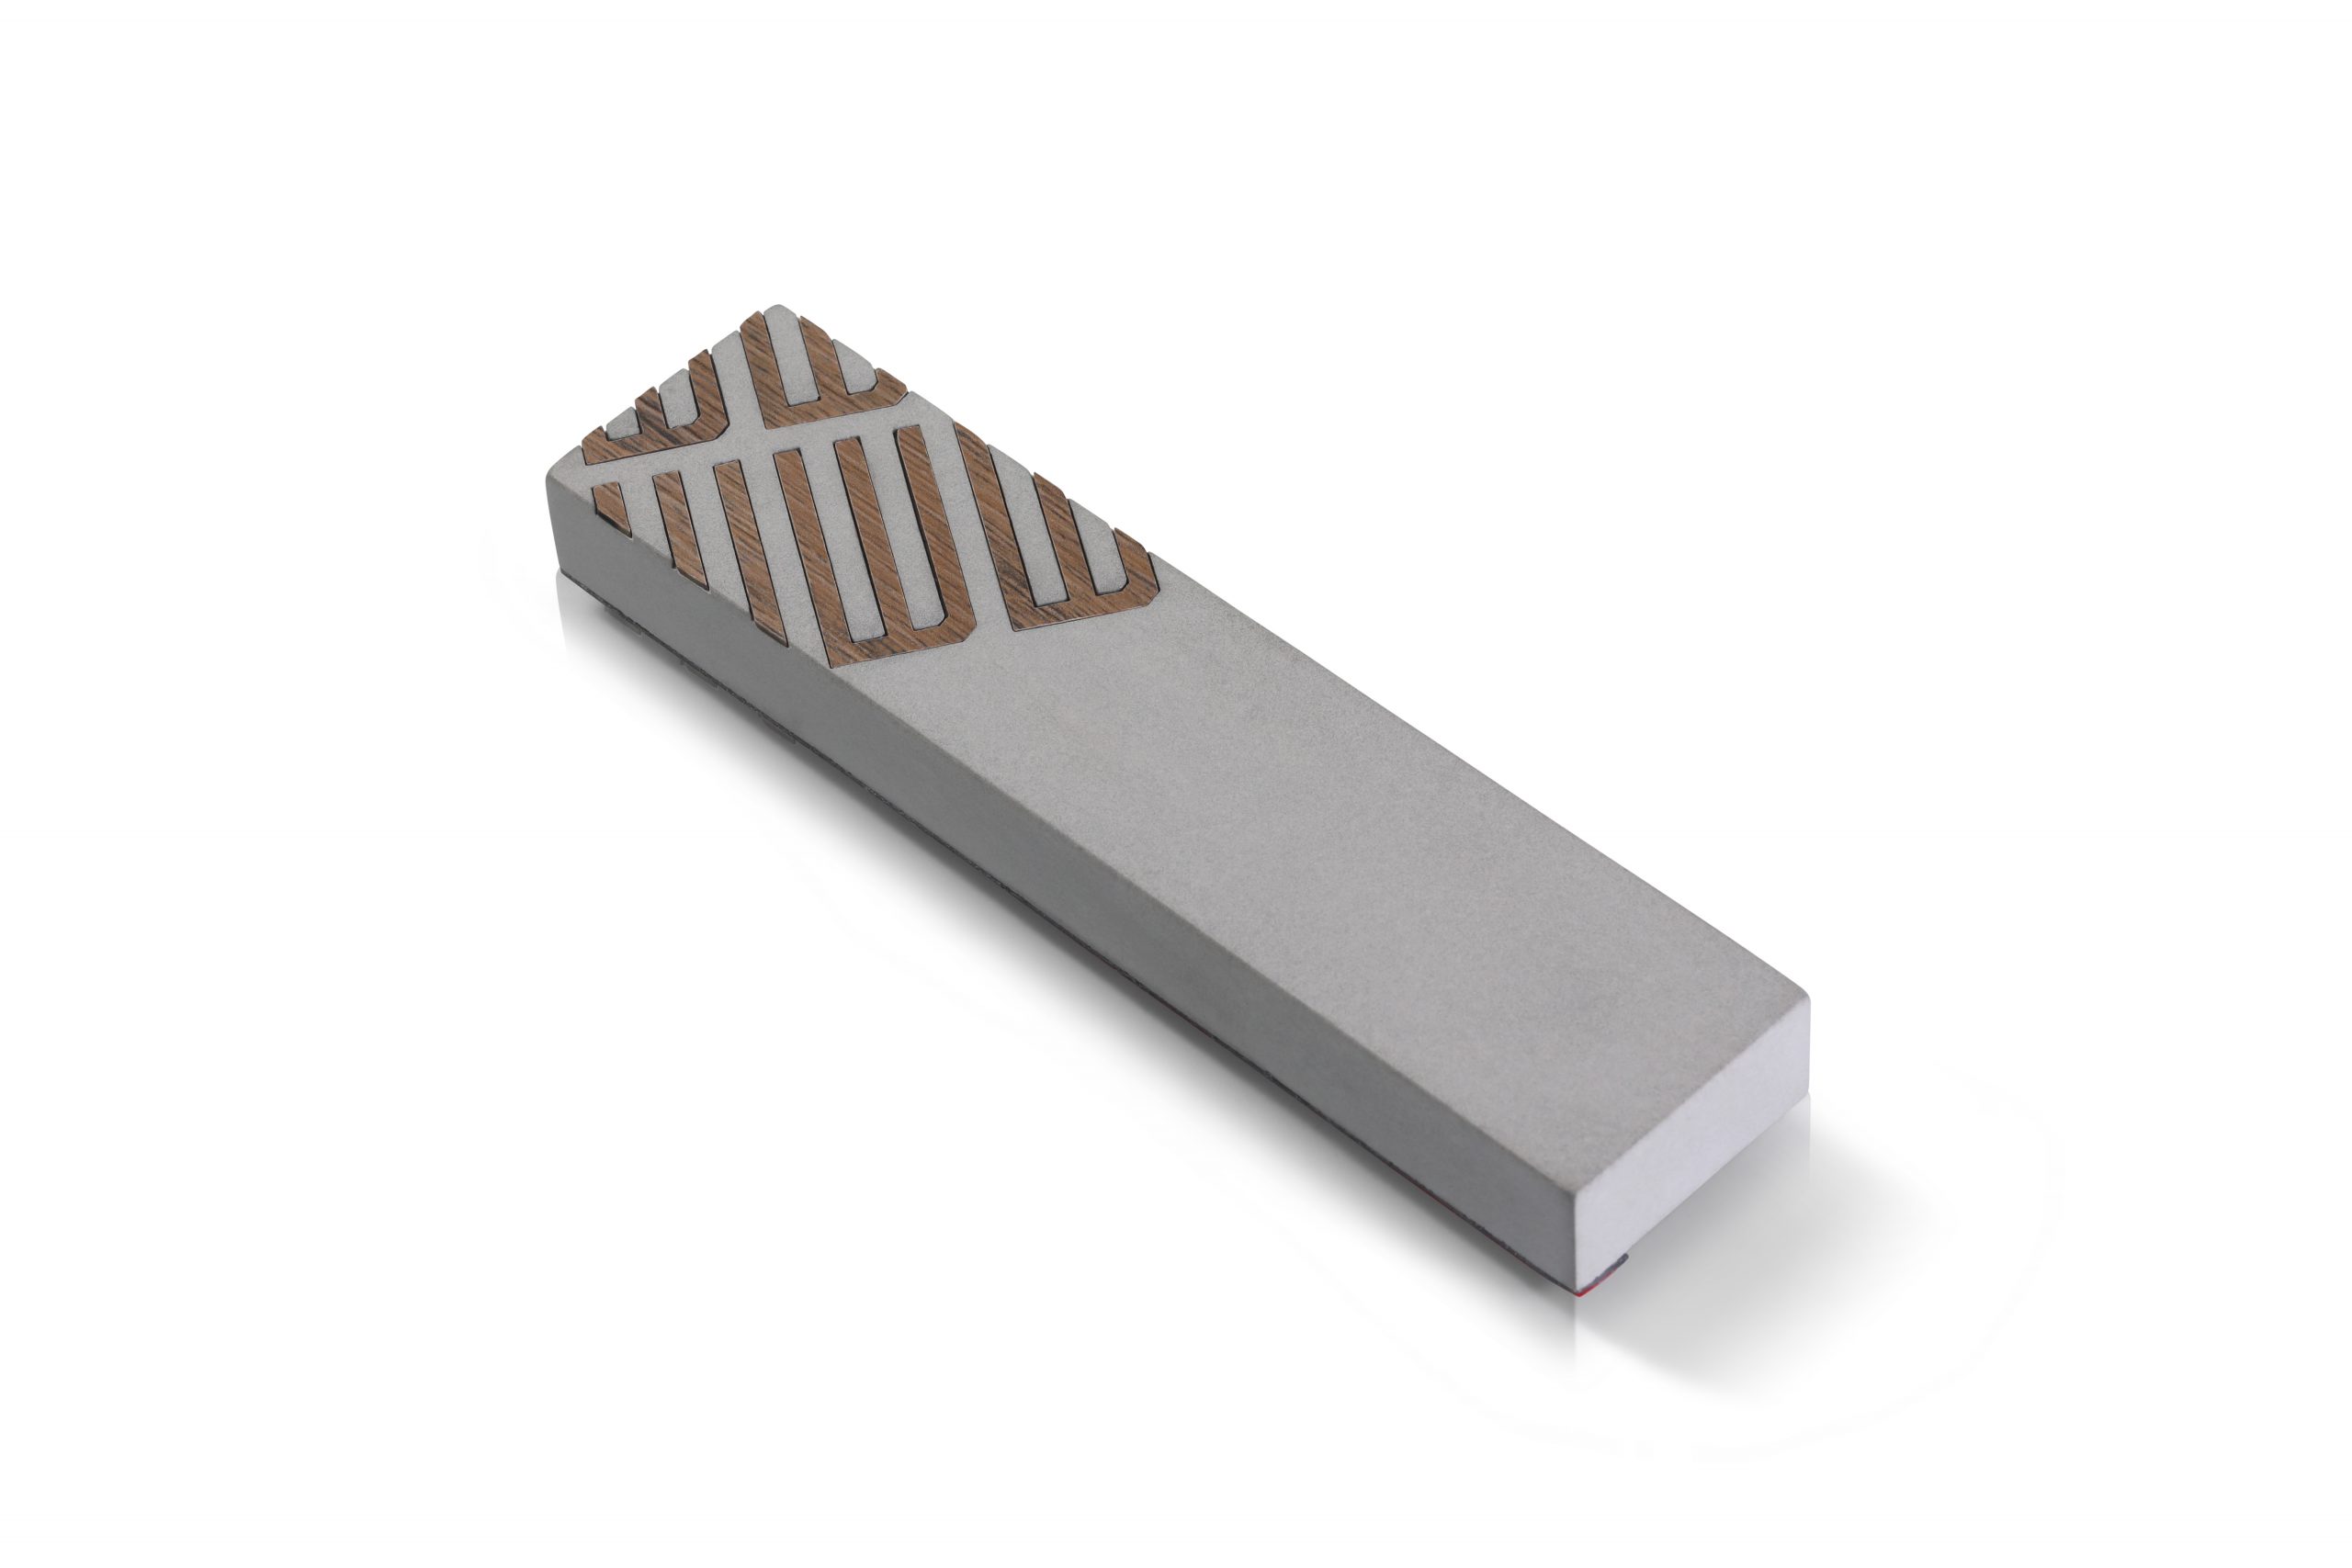 Elegant Mezuzah Case – Diagonal Design in Concrete and Wood